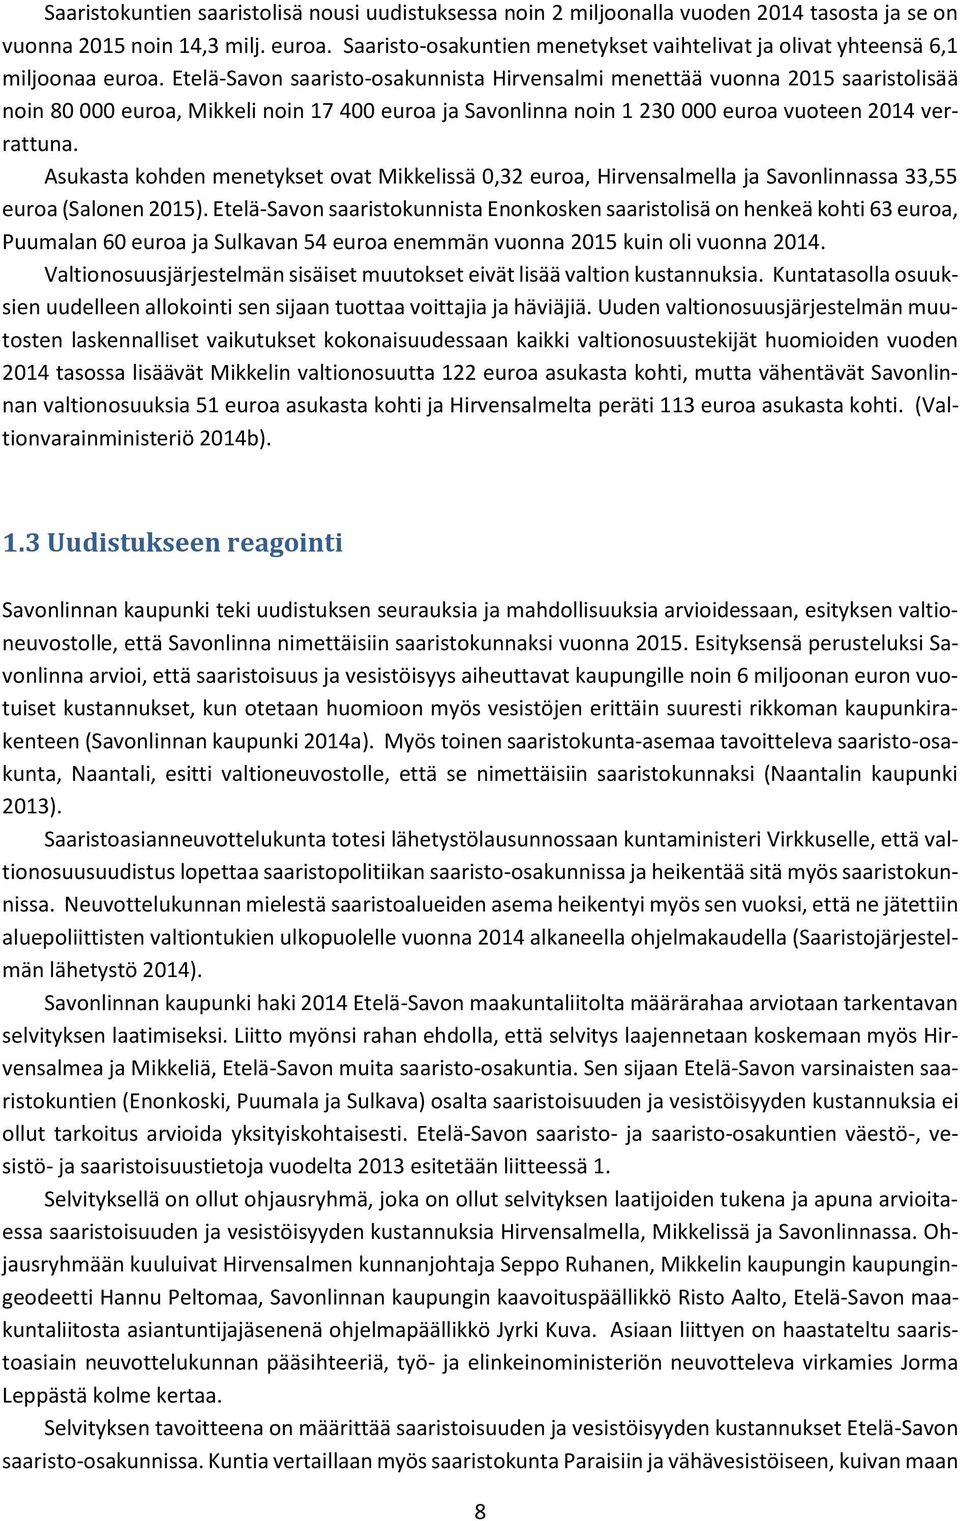 Etelä-Savon saaristo-osakunnista Hirvensalmi menettää vuonna 2015 saaristolisää noin 80 000 euroa, Mikkeli noin 17 400 euroa ja Savonlinna noin 1 230 000 euroa vuoteen 2014 verrattuna.